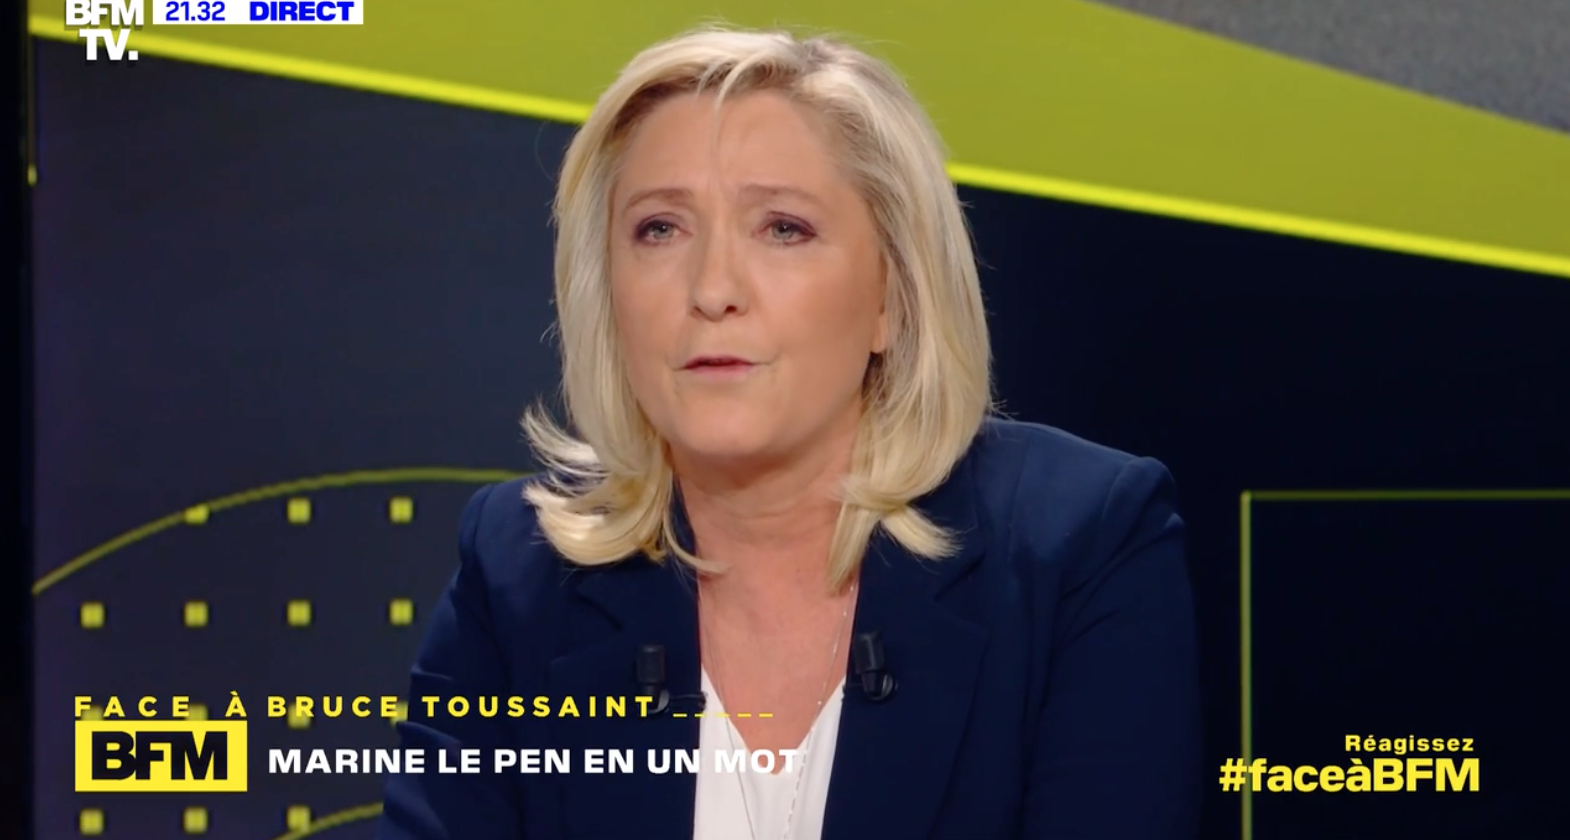     Accusée de xénophobie, Marine Le Pen évoque ses scores électoraux en Outre-mer

